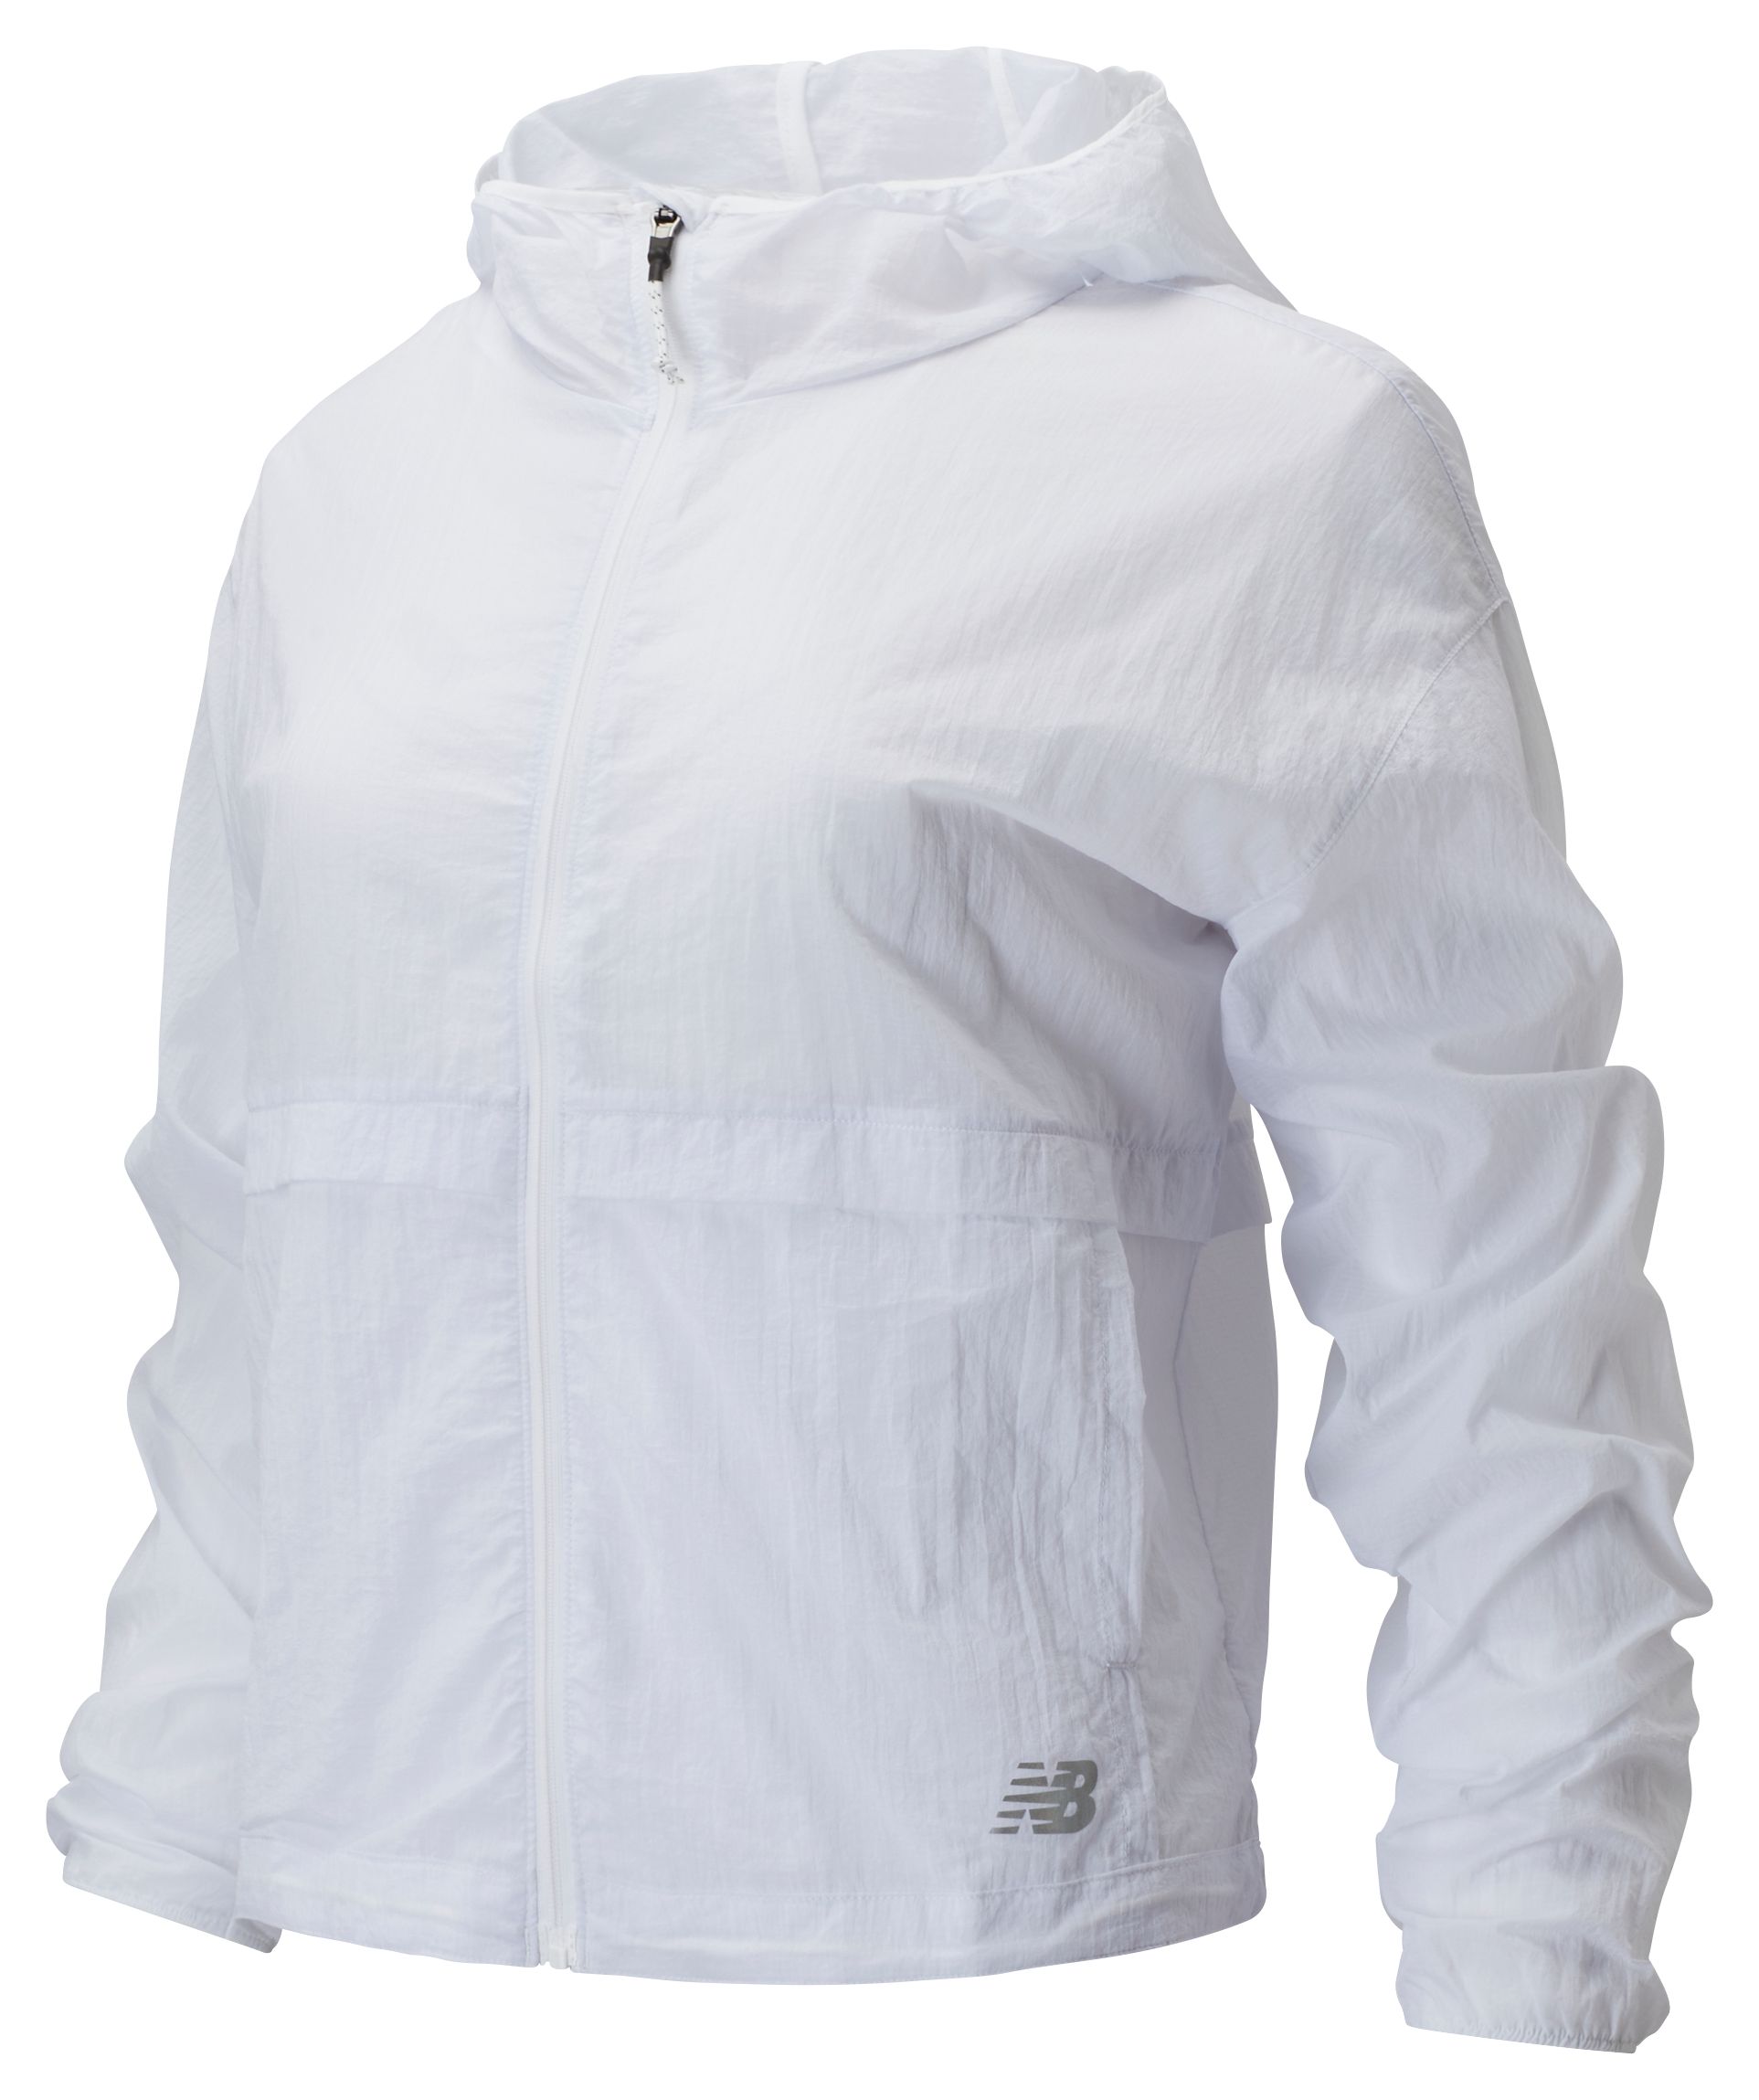 new balance white jacket